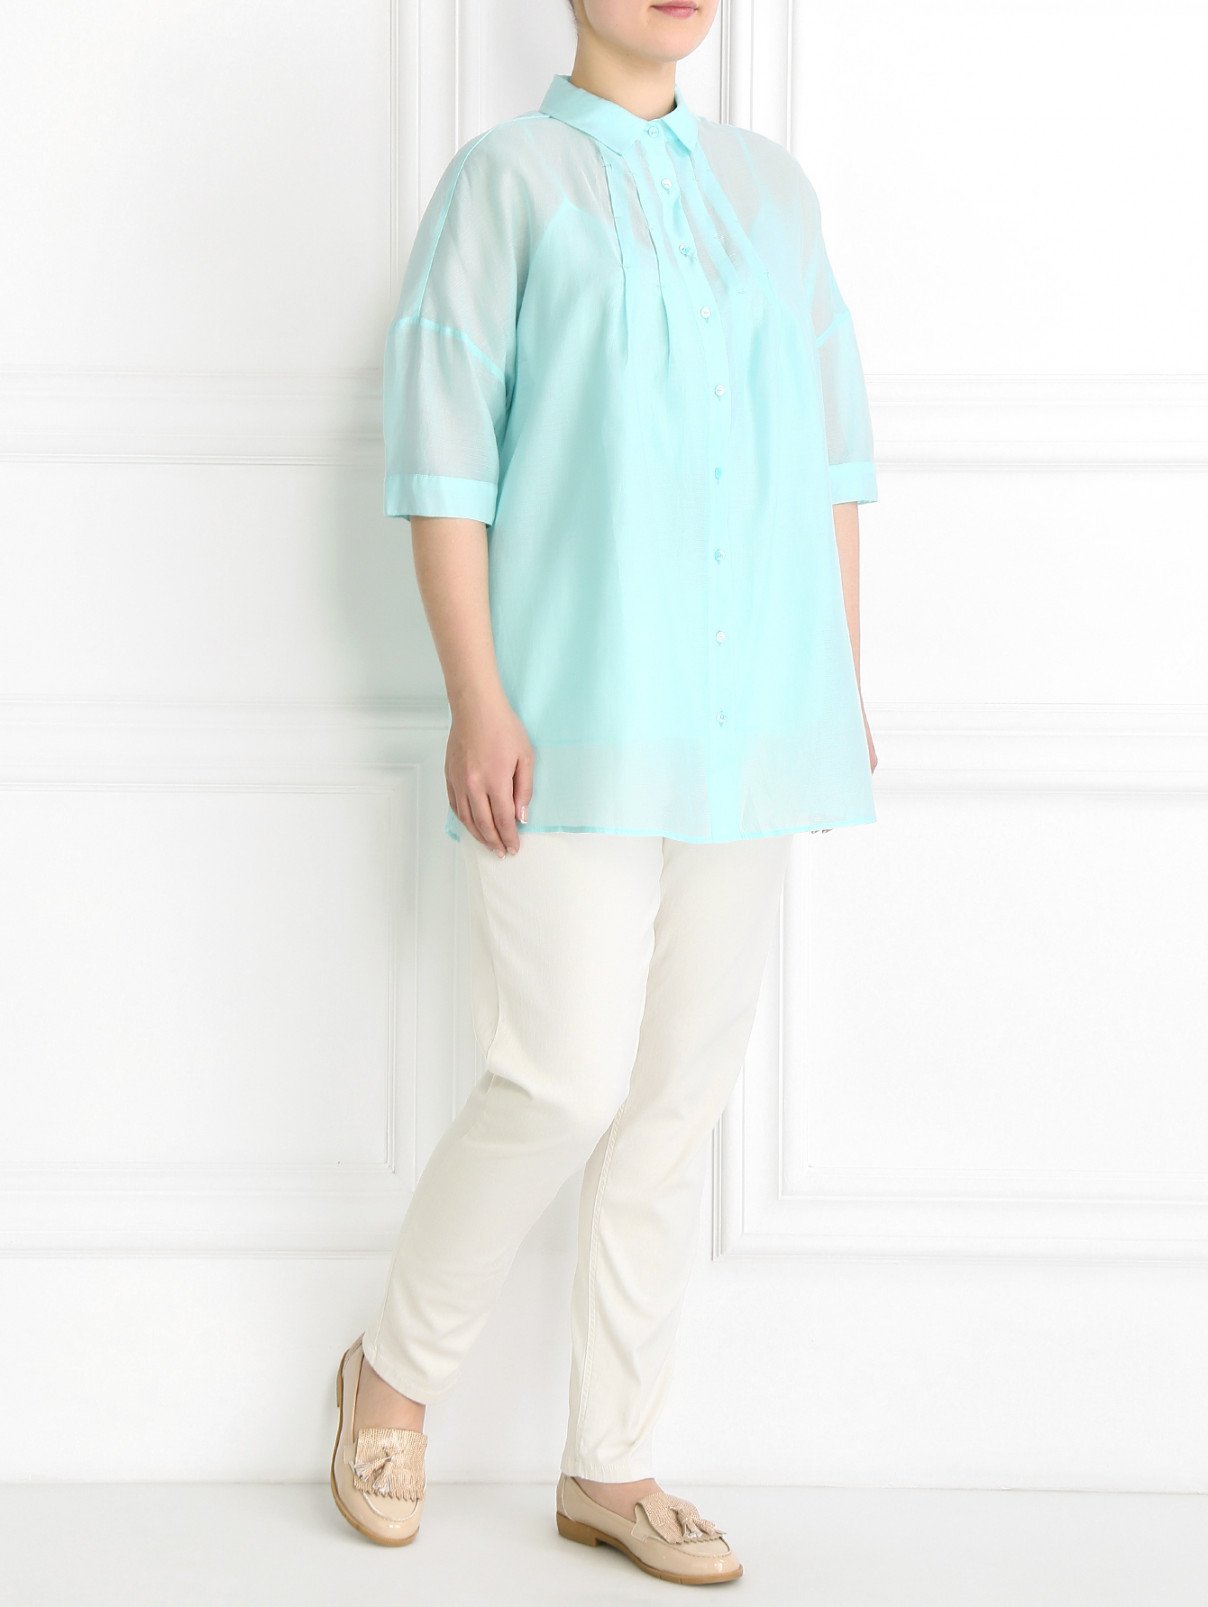 Блуза из хлопка и шелка Voyage by Marina Rinaldi  –  Модель Общий вид  – Цвет:  Зеленый